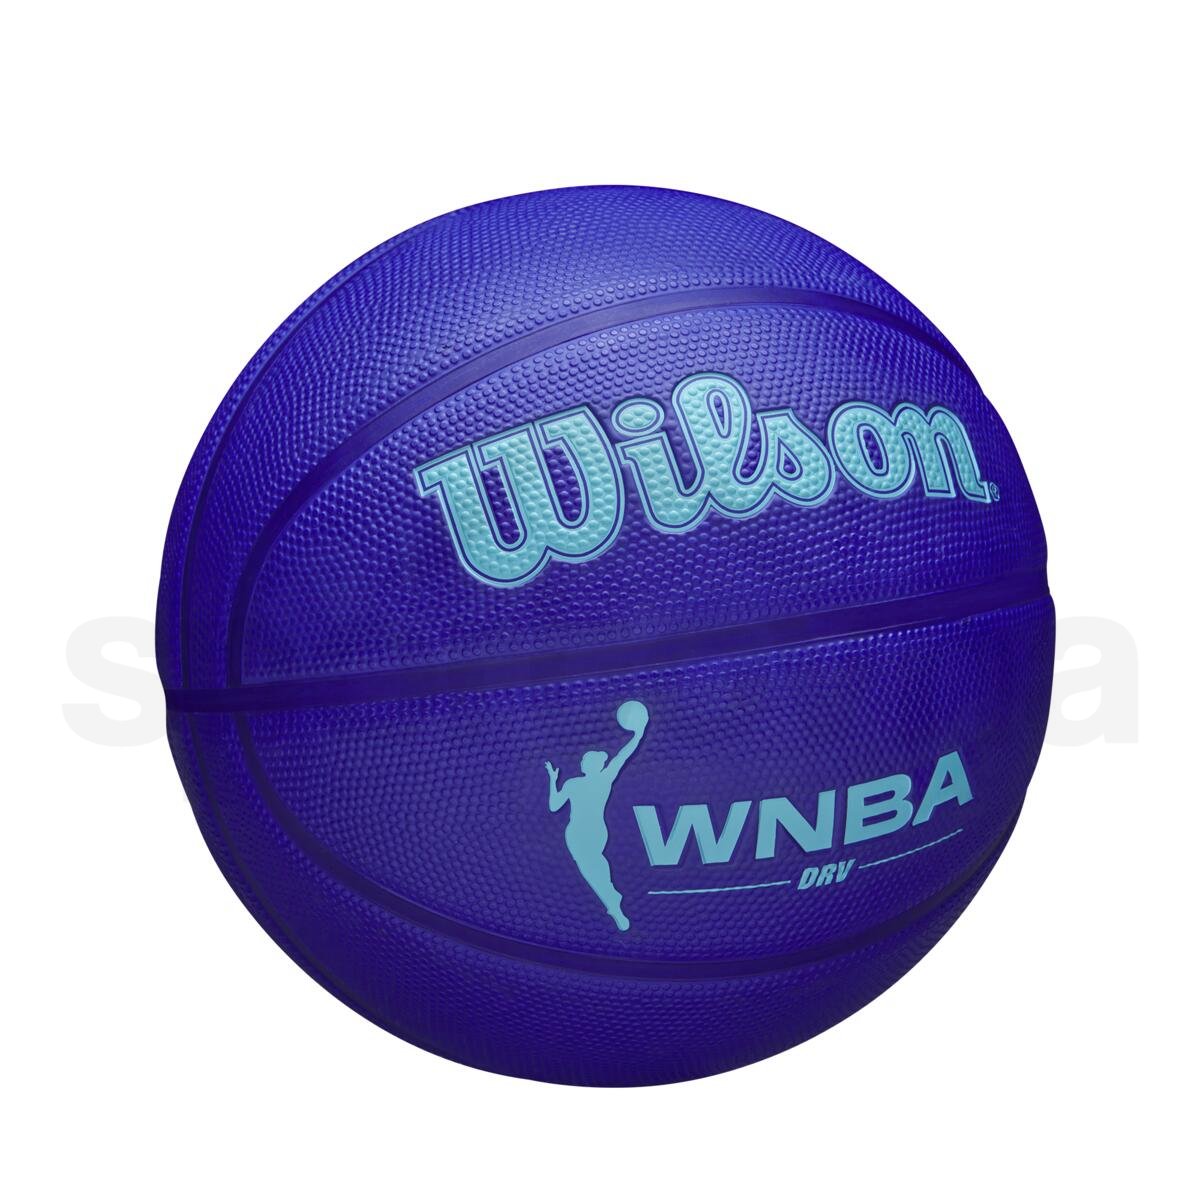 Míč Wilson WNBA Drv Bskt - modrá